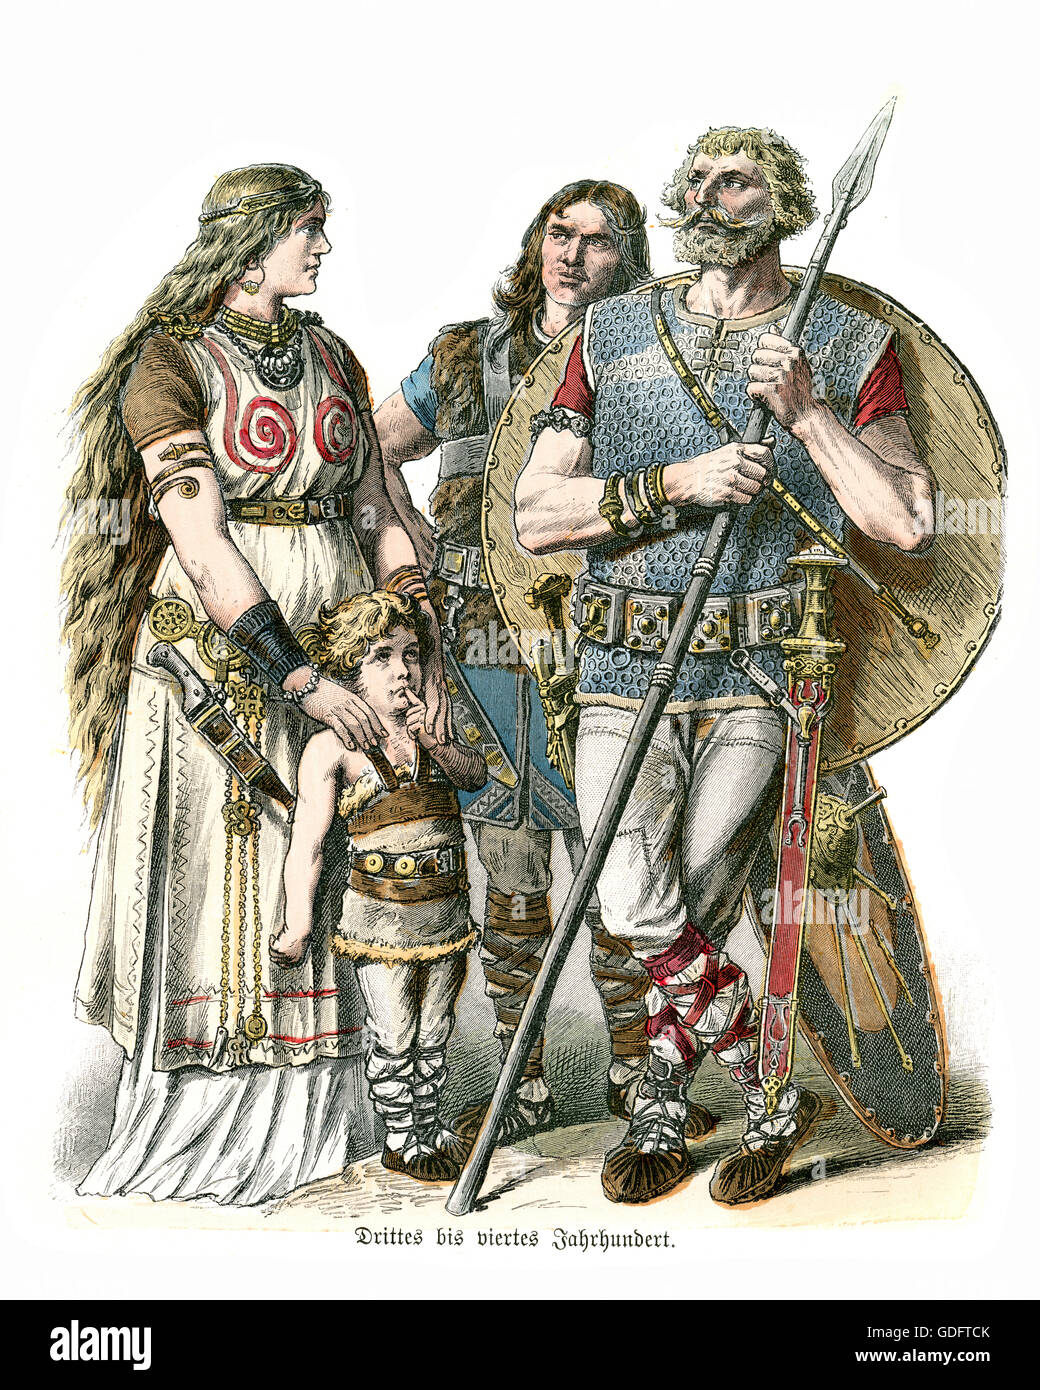 Les costumes des tribus germaniques 1er au 4ème siècle, la mère et l'enfant et de guerrier avec une lance et un bouclier Banque D'Images